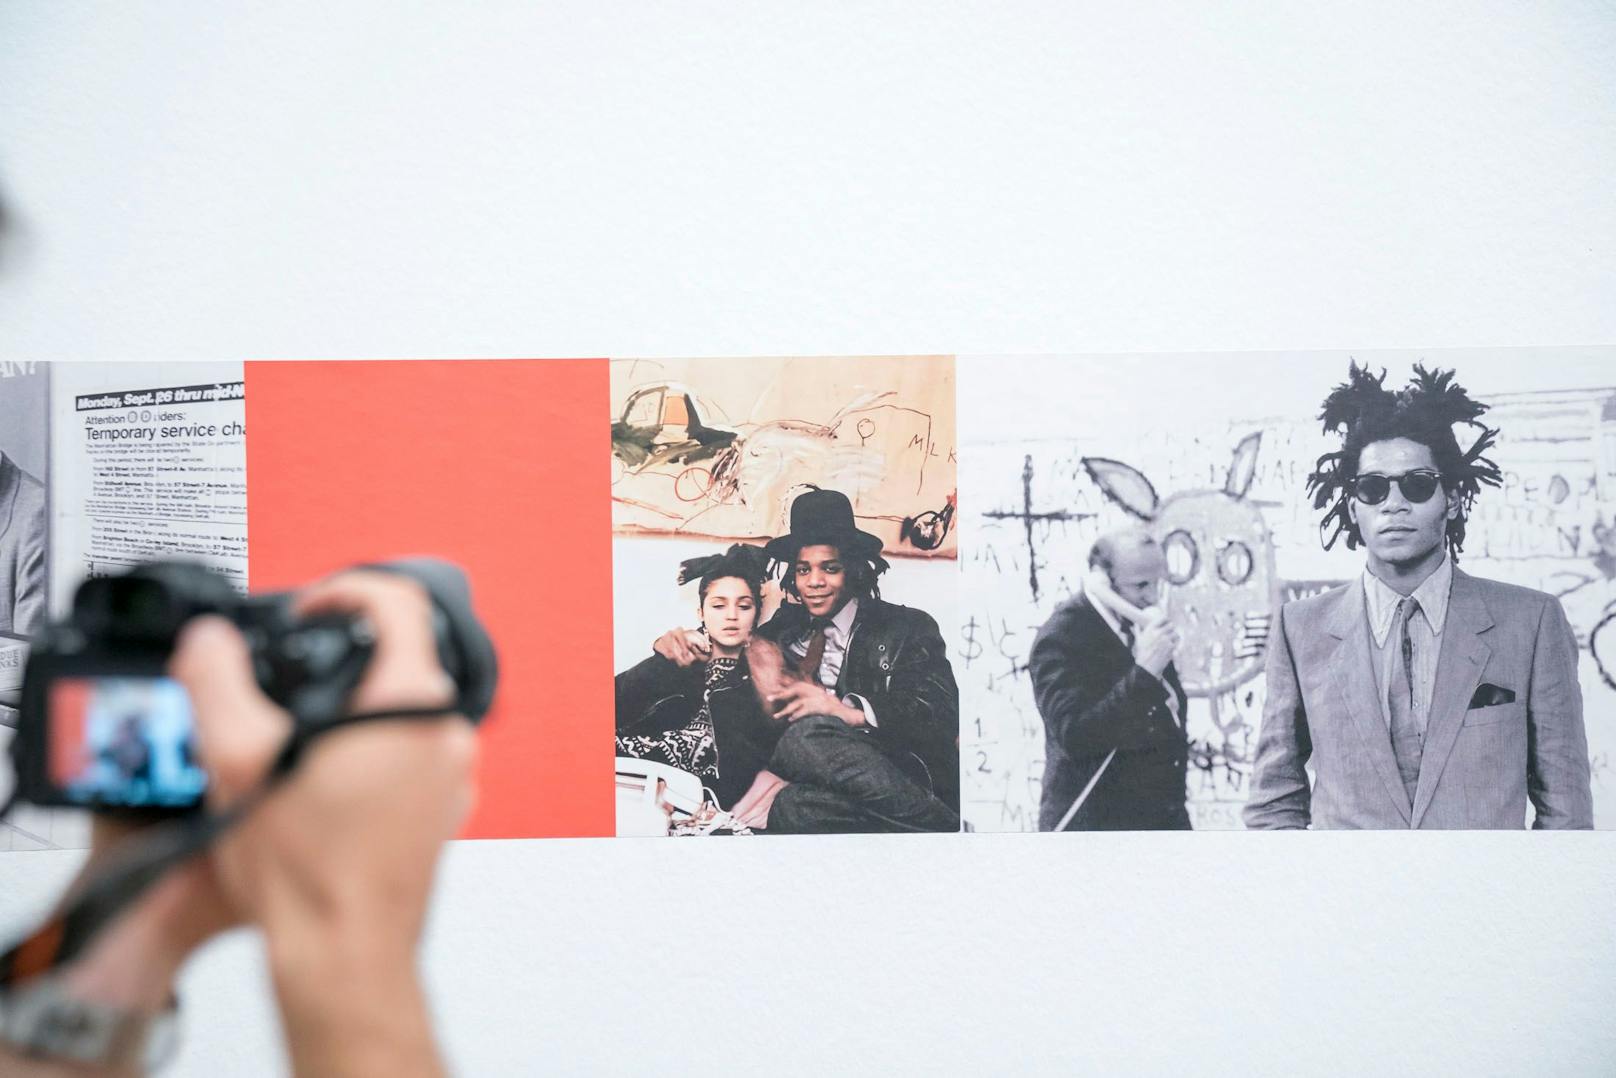 Künstler Jean-Michel Basquiat mit der jungen Madonna, als sie noch nicht berühmt war.